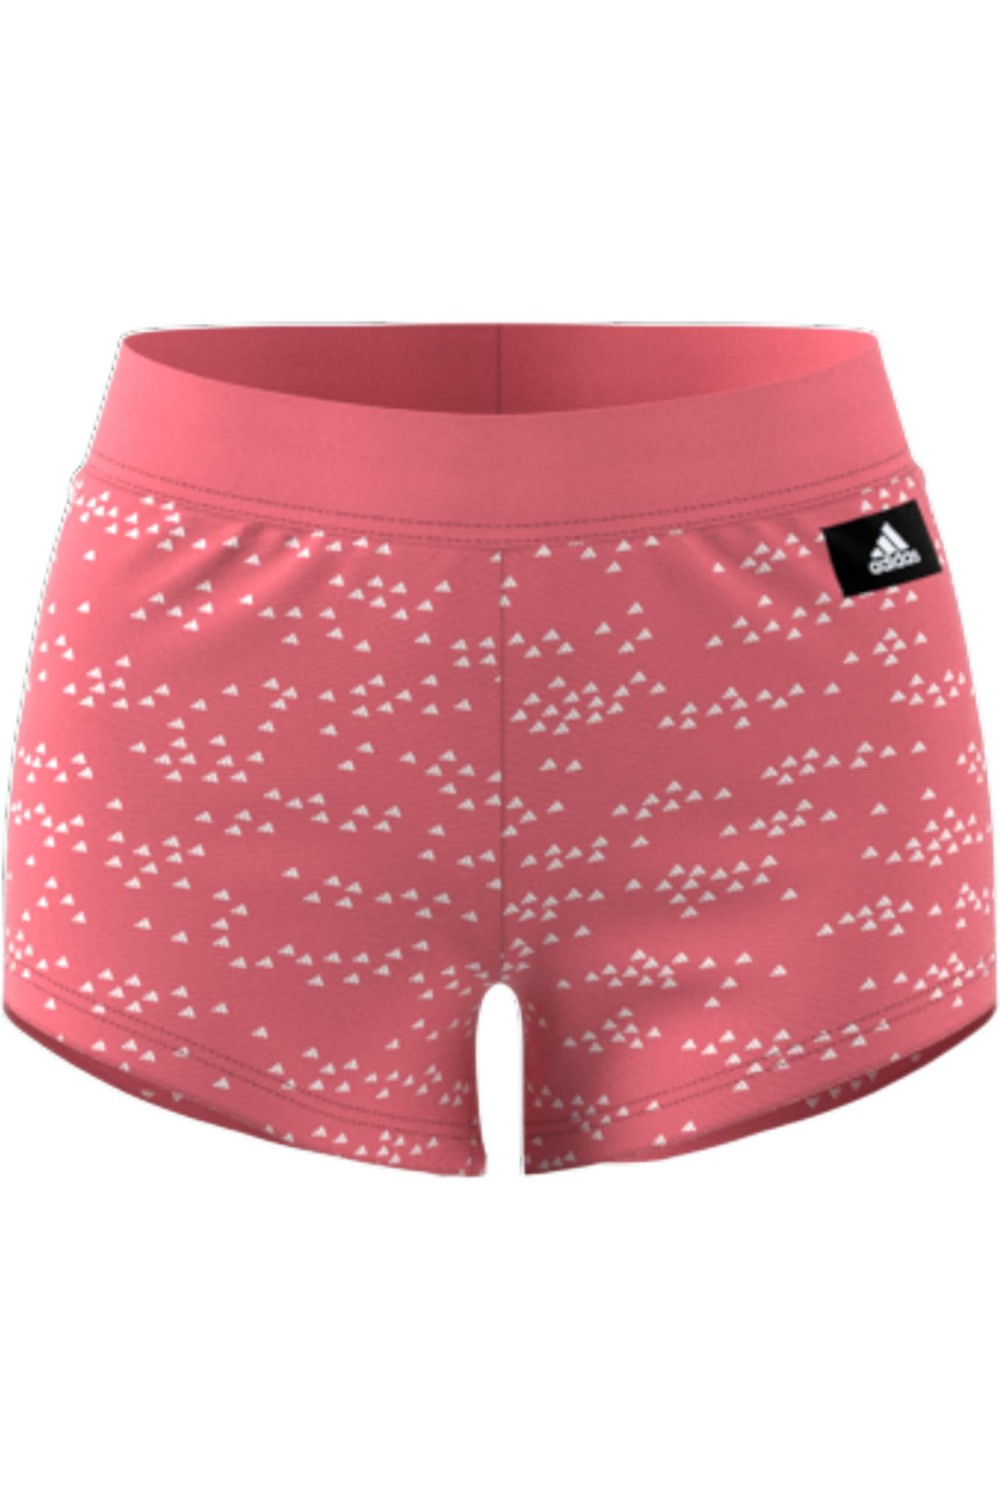 pantalones cortos adidas rosa gq6067